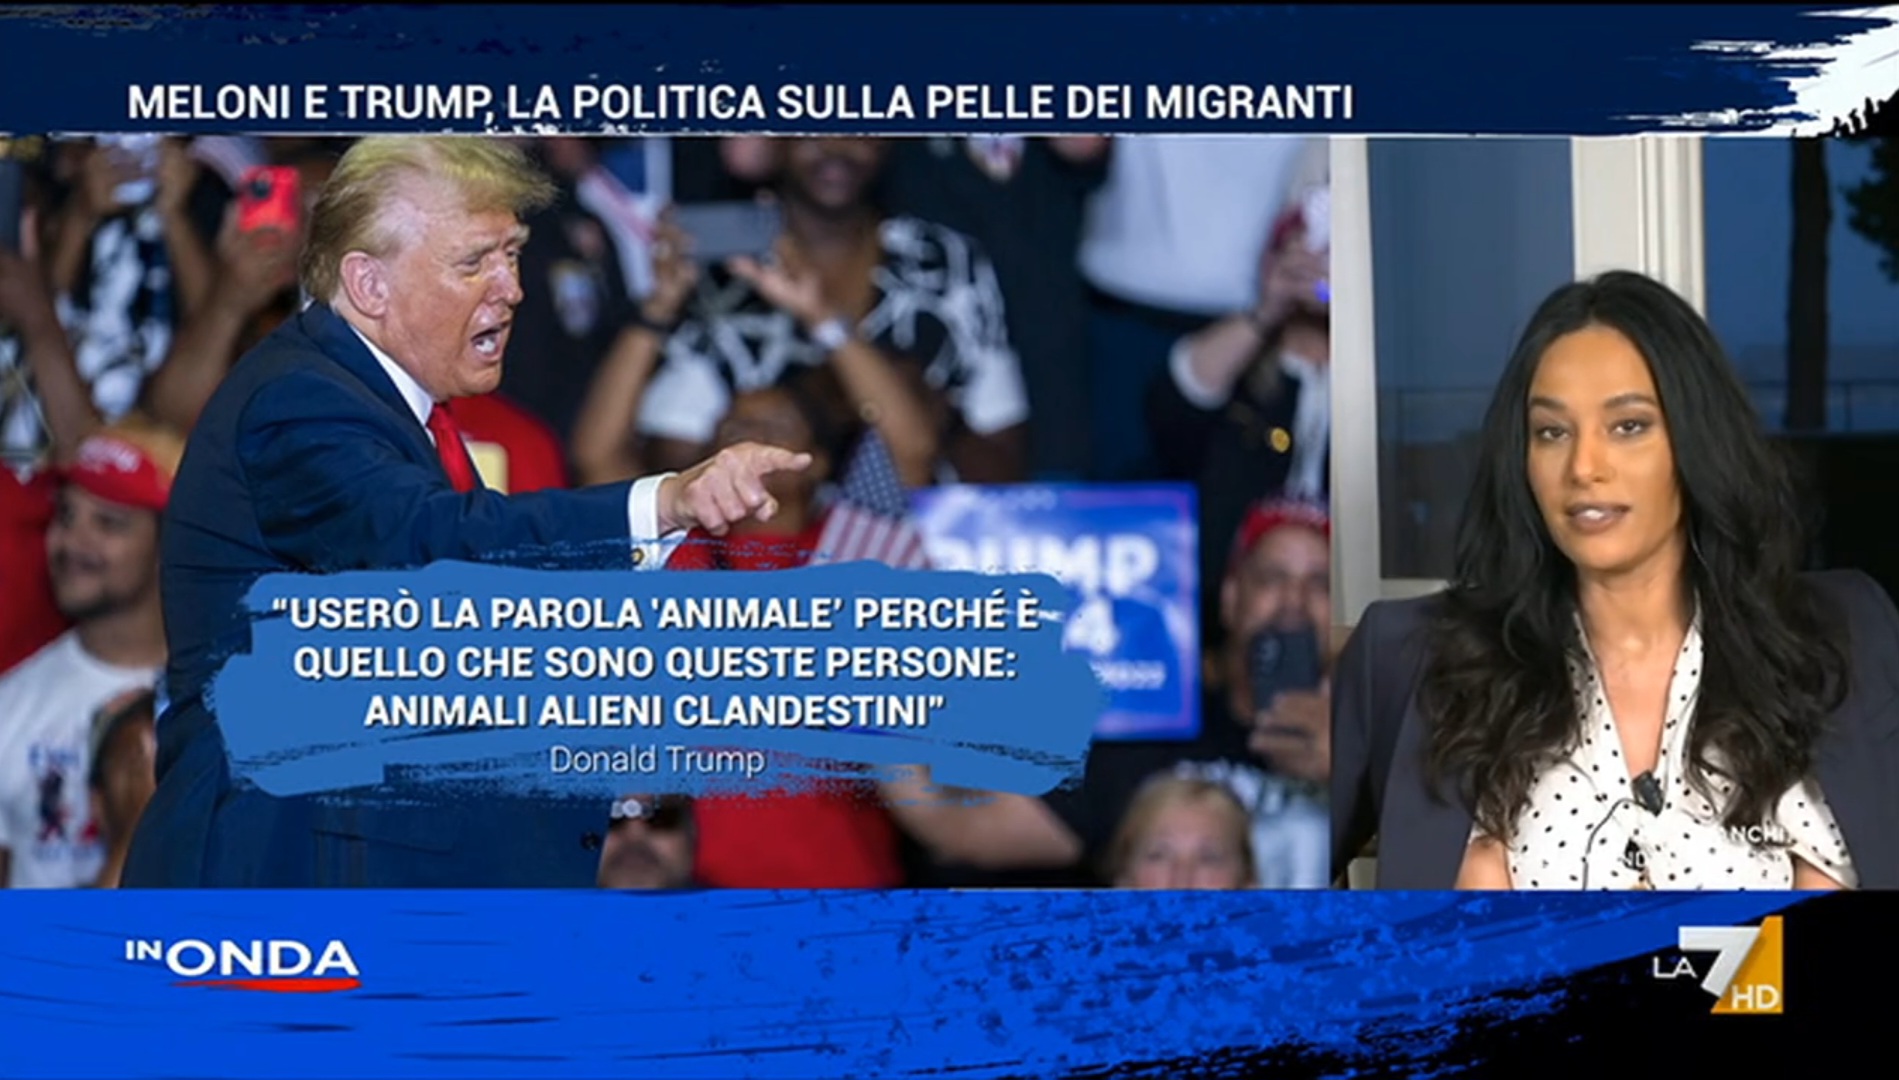 I migranti al centro della campagna elettorale di Donald Trump nell'intervento di Rula Jebreal nel corso di
In onda, su La7